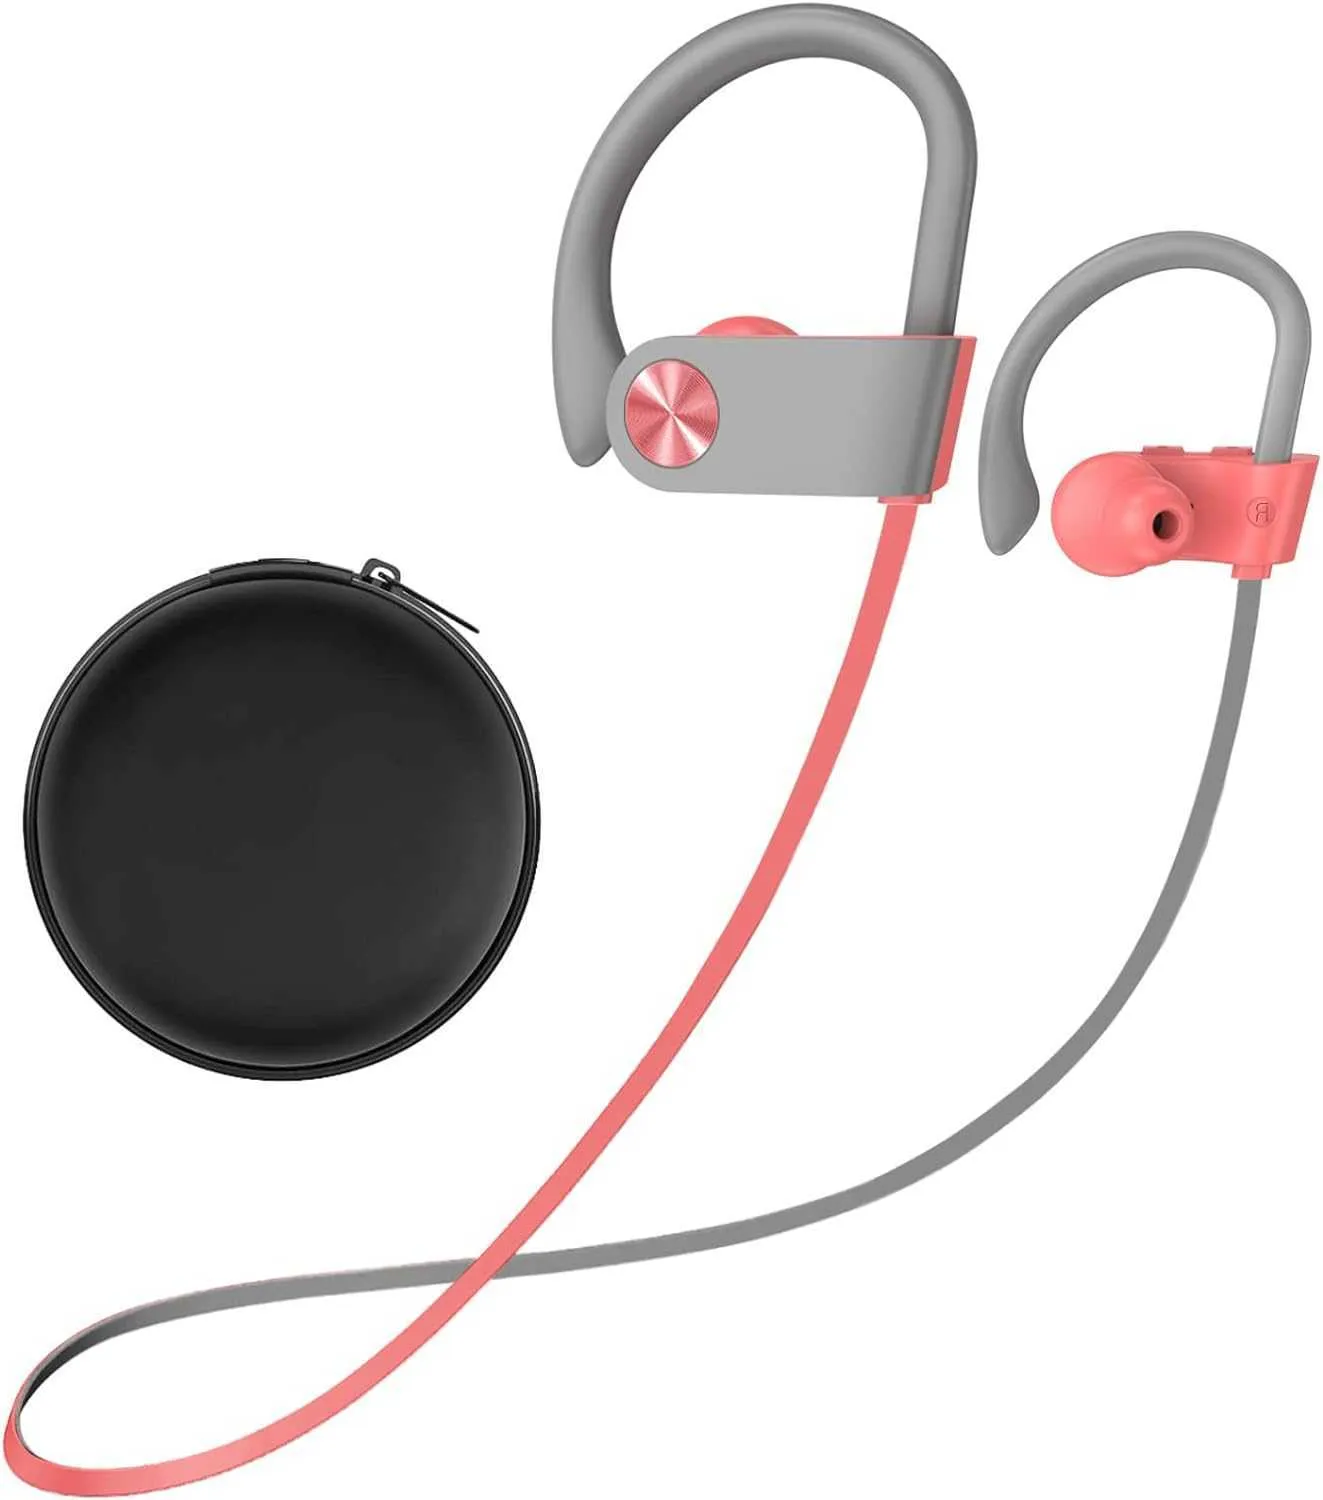 BluetoothワイヤレスヘッドフォンEarhookスポーツフィットネス用の長いバッテリー寿命ステレオ防水ヘッドフォン1SFU6